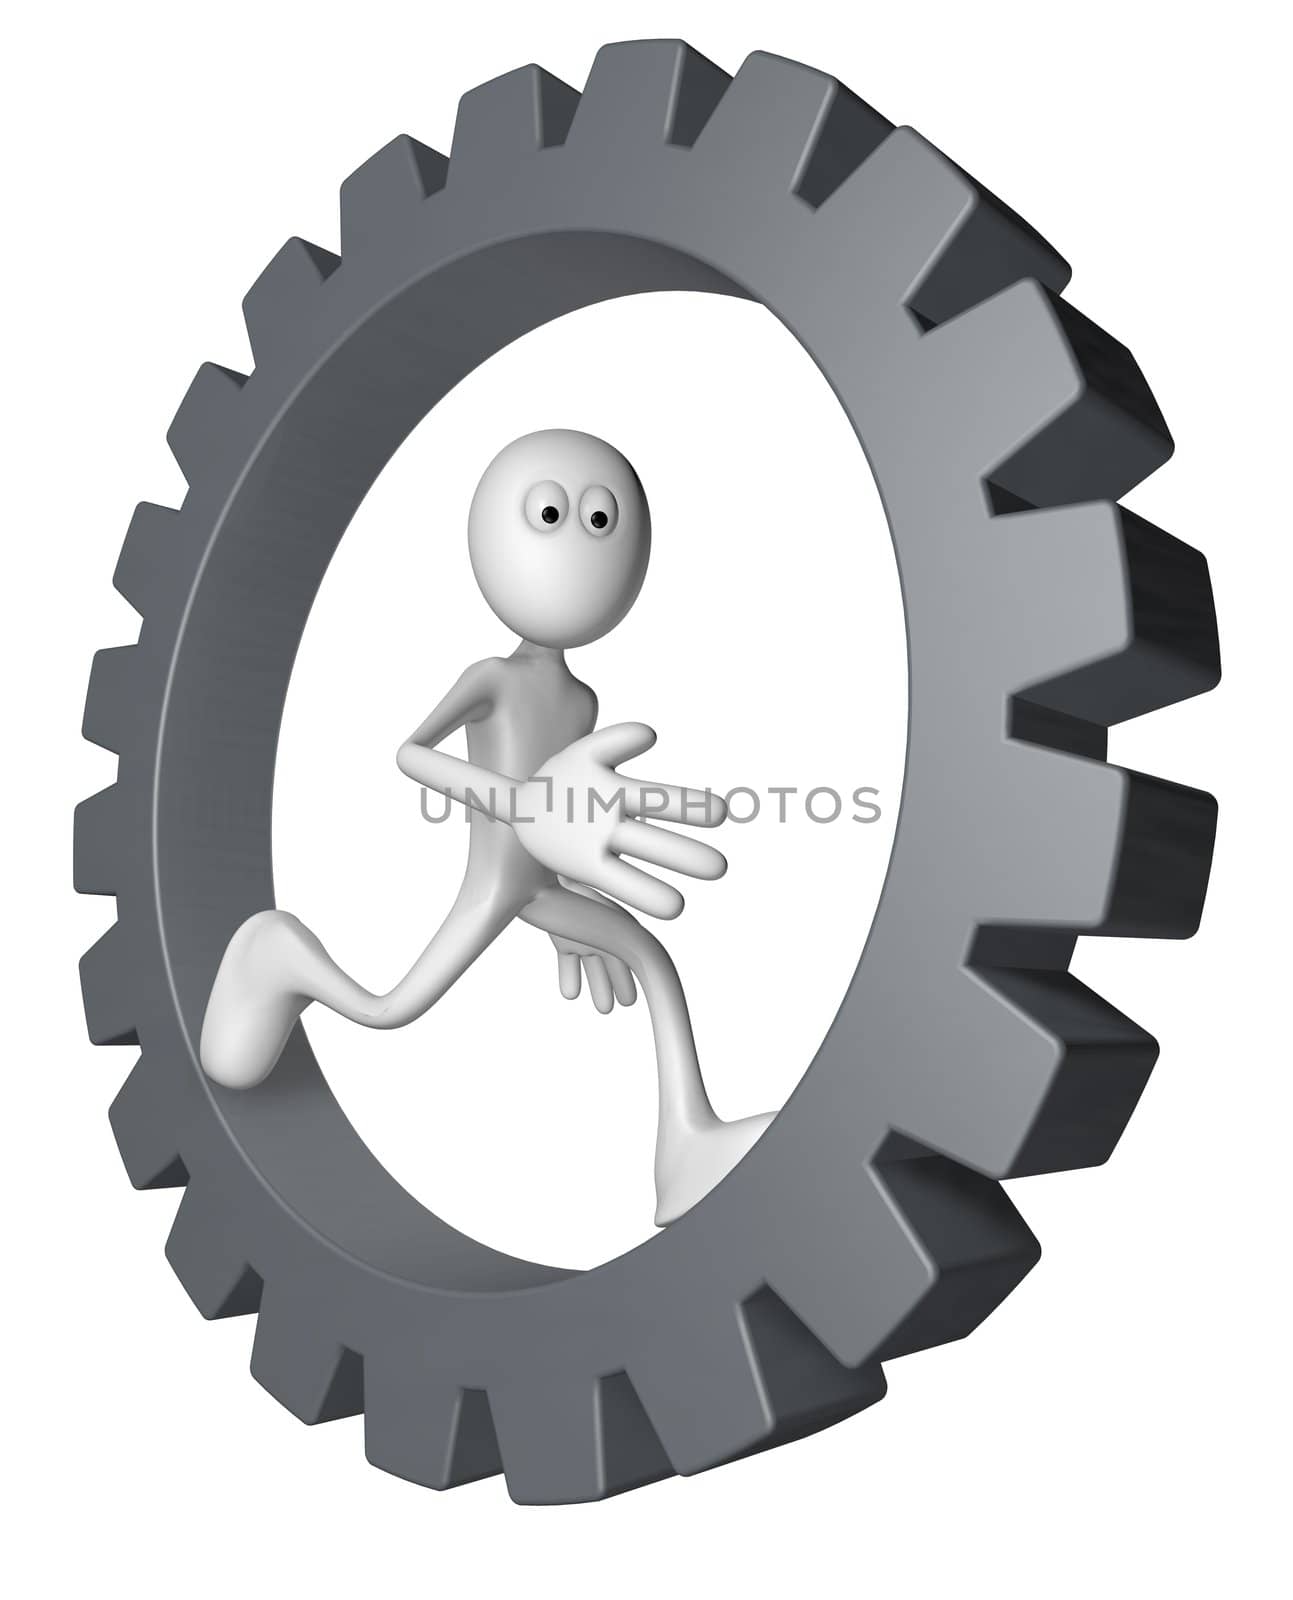 white guy is running inside gear wheel - 3d illustration